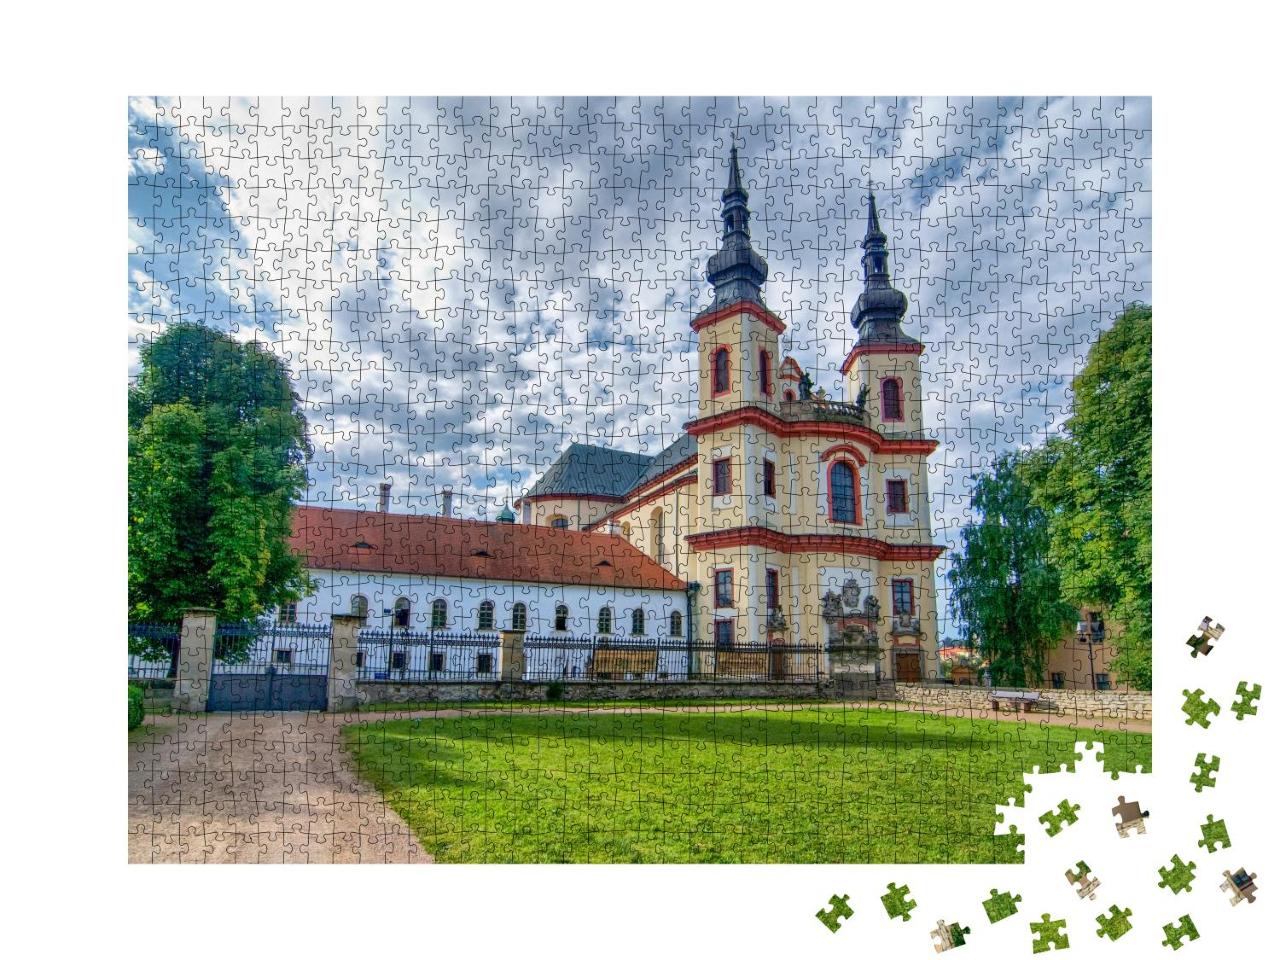 Puzzle 1000 Teile „Litomysl: Blick auf die Kirche nahe am Schloss, Tschechische Republik“